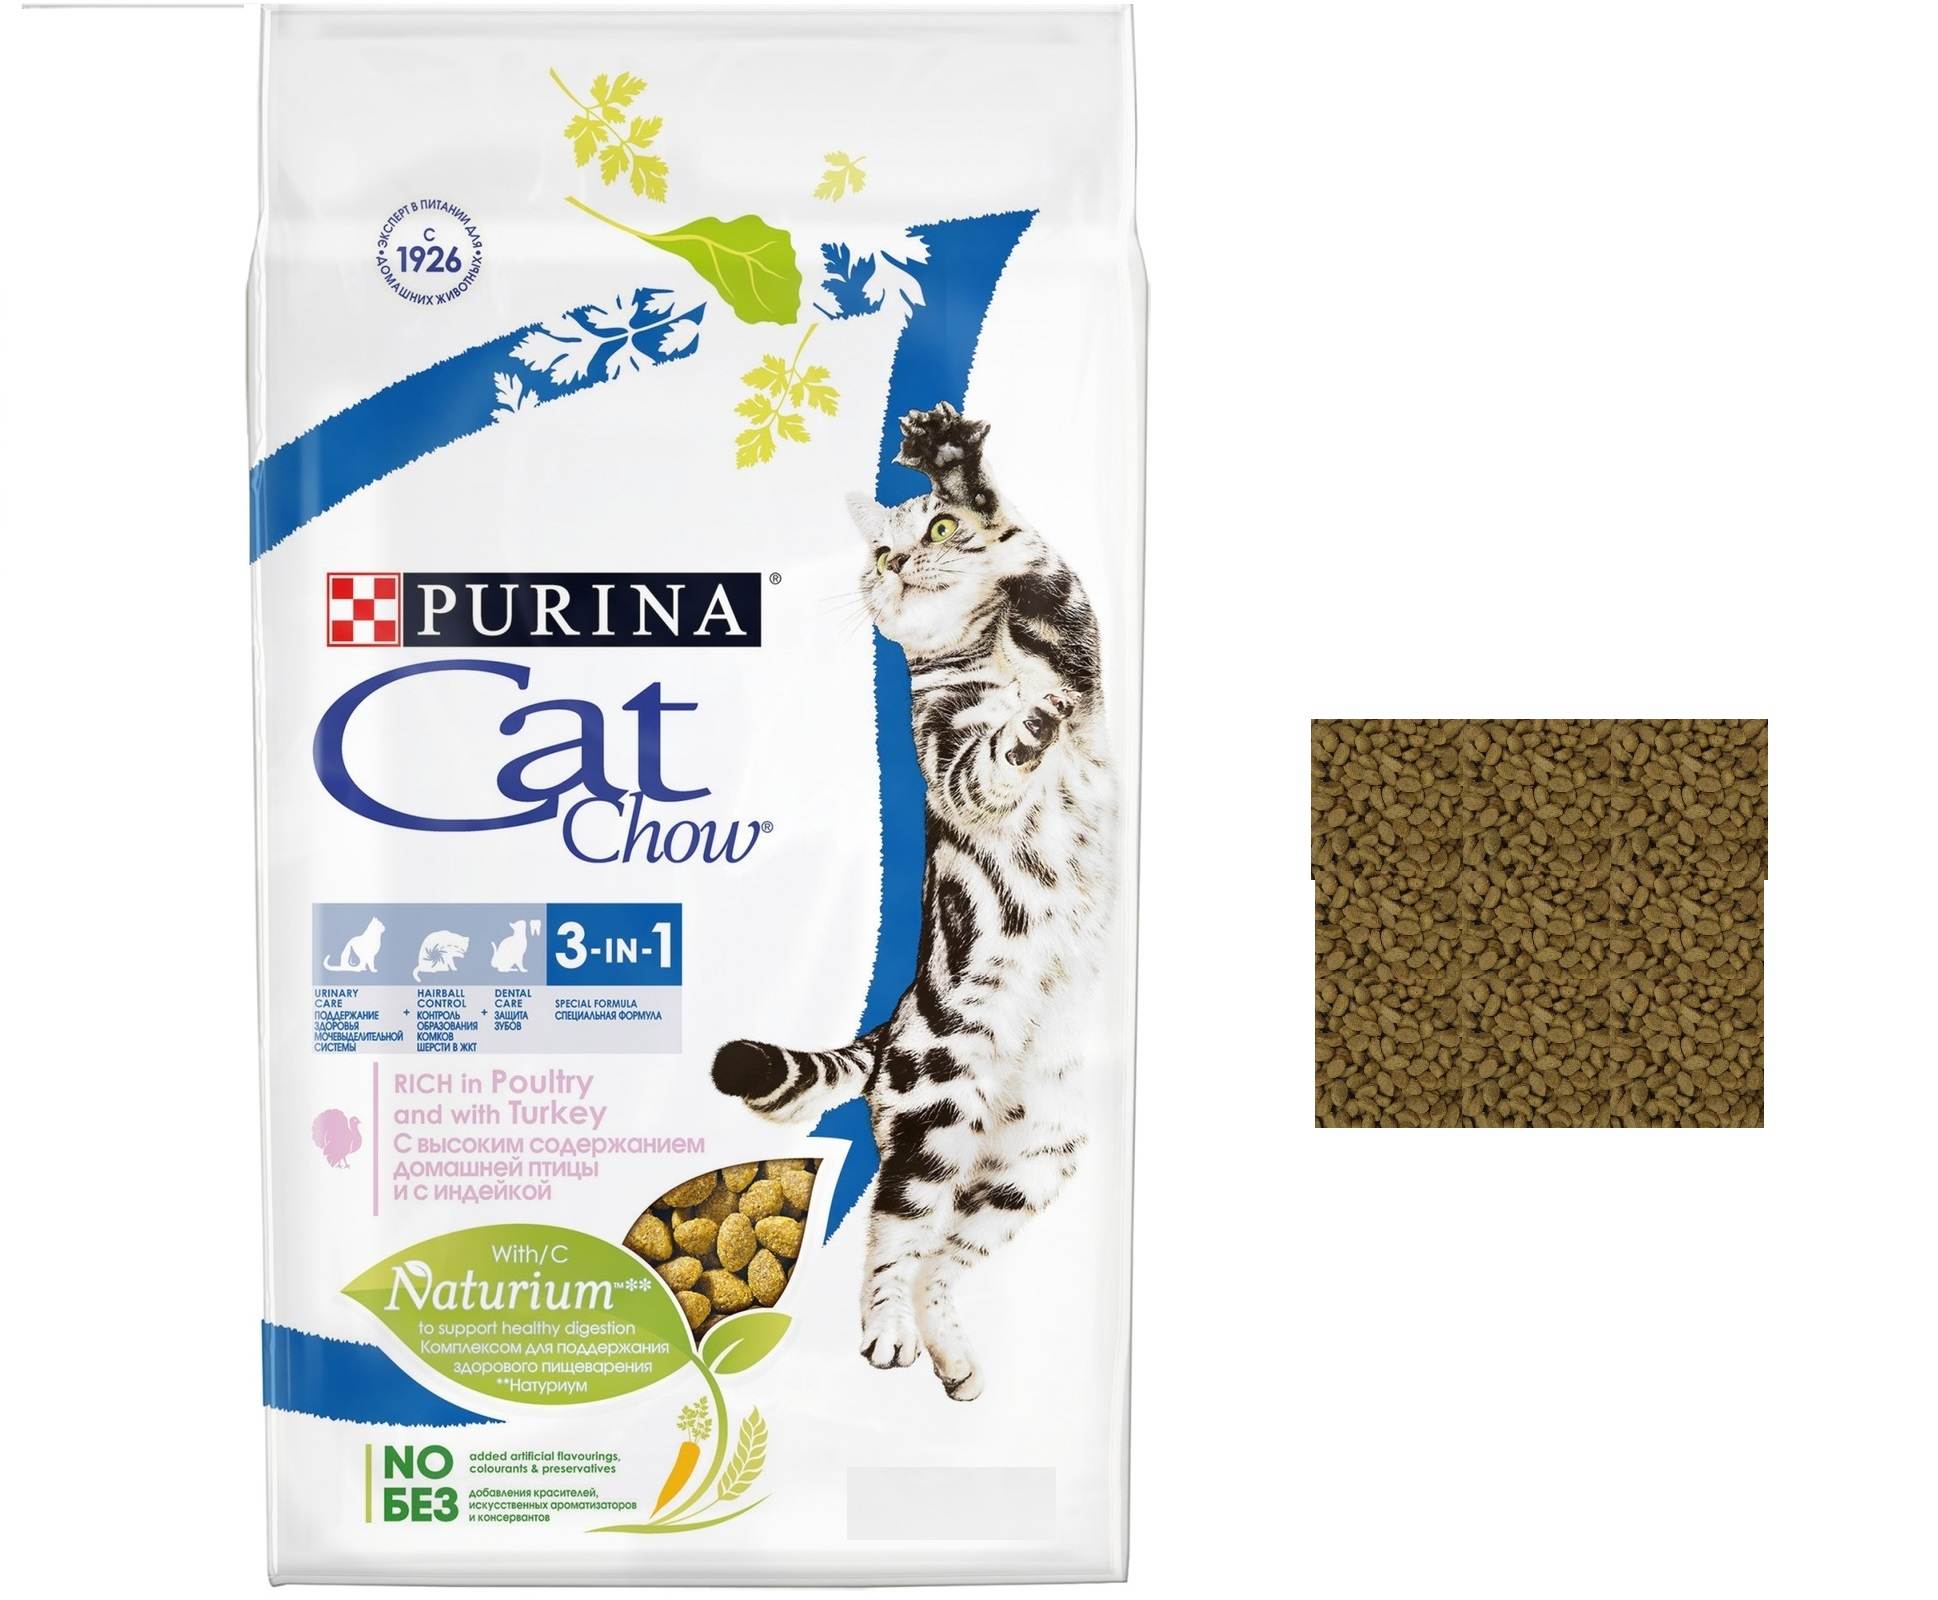 Кэт чау: корм для кошек от пурина, сухой, влажный, состав, отзывы